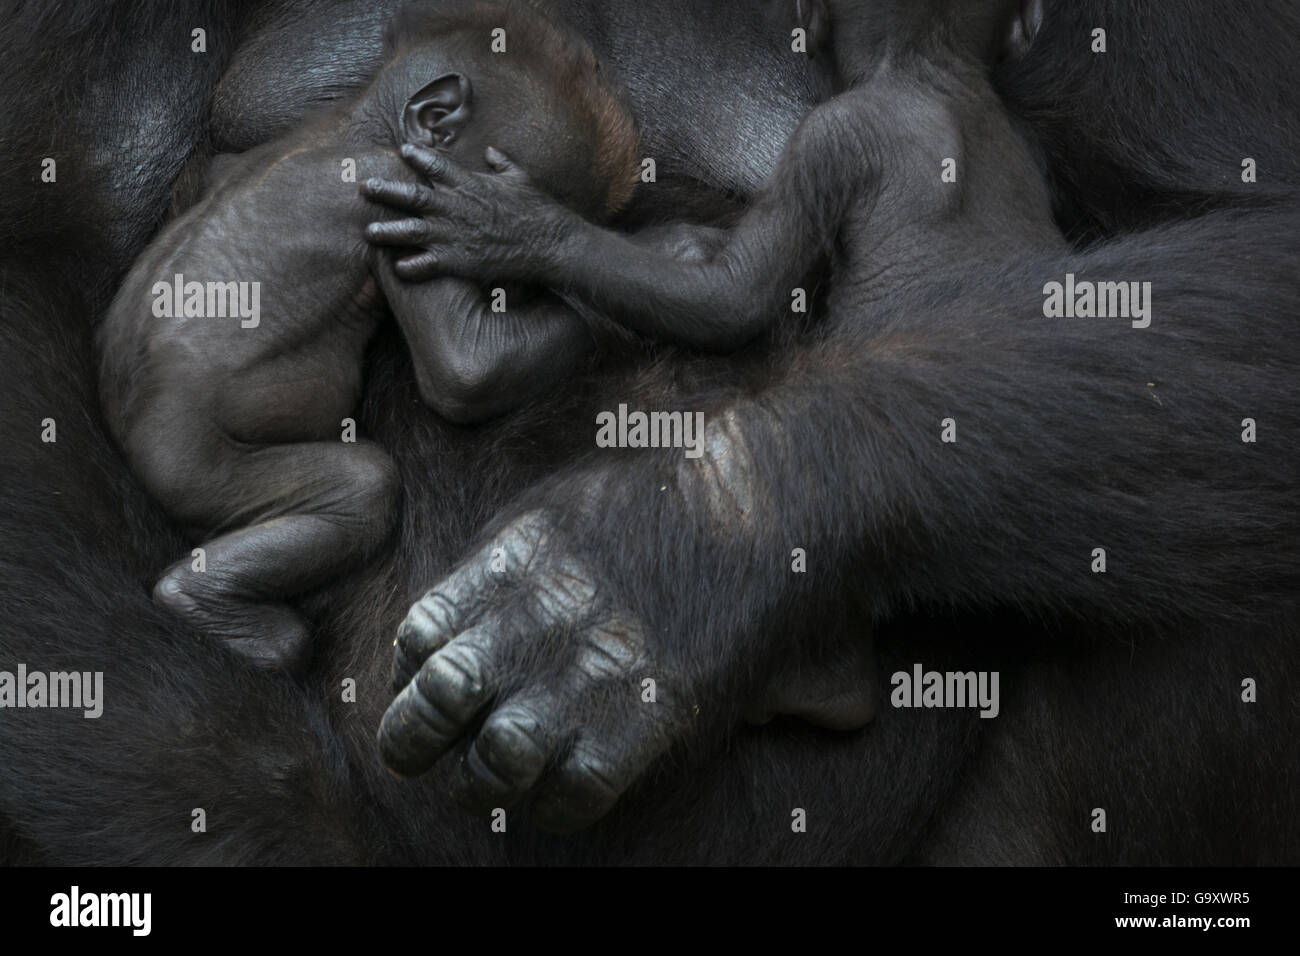 Gorila de las tierras bajas occidentales (Gorilla gorilla gorilla) twin bebés edad 45 días durmiendo en brazos de la madre, cautiva, ocurre en el centro Foto de stock